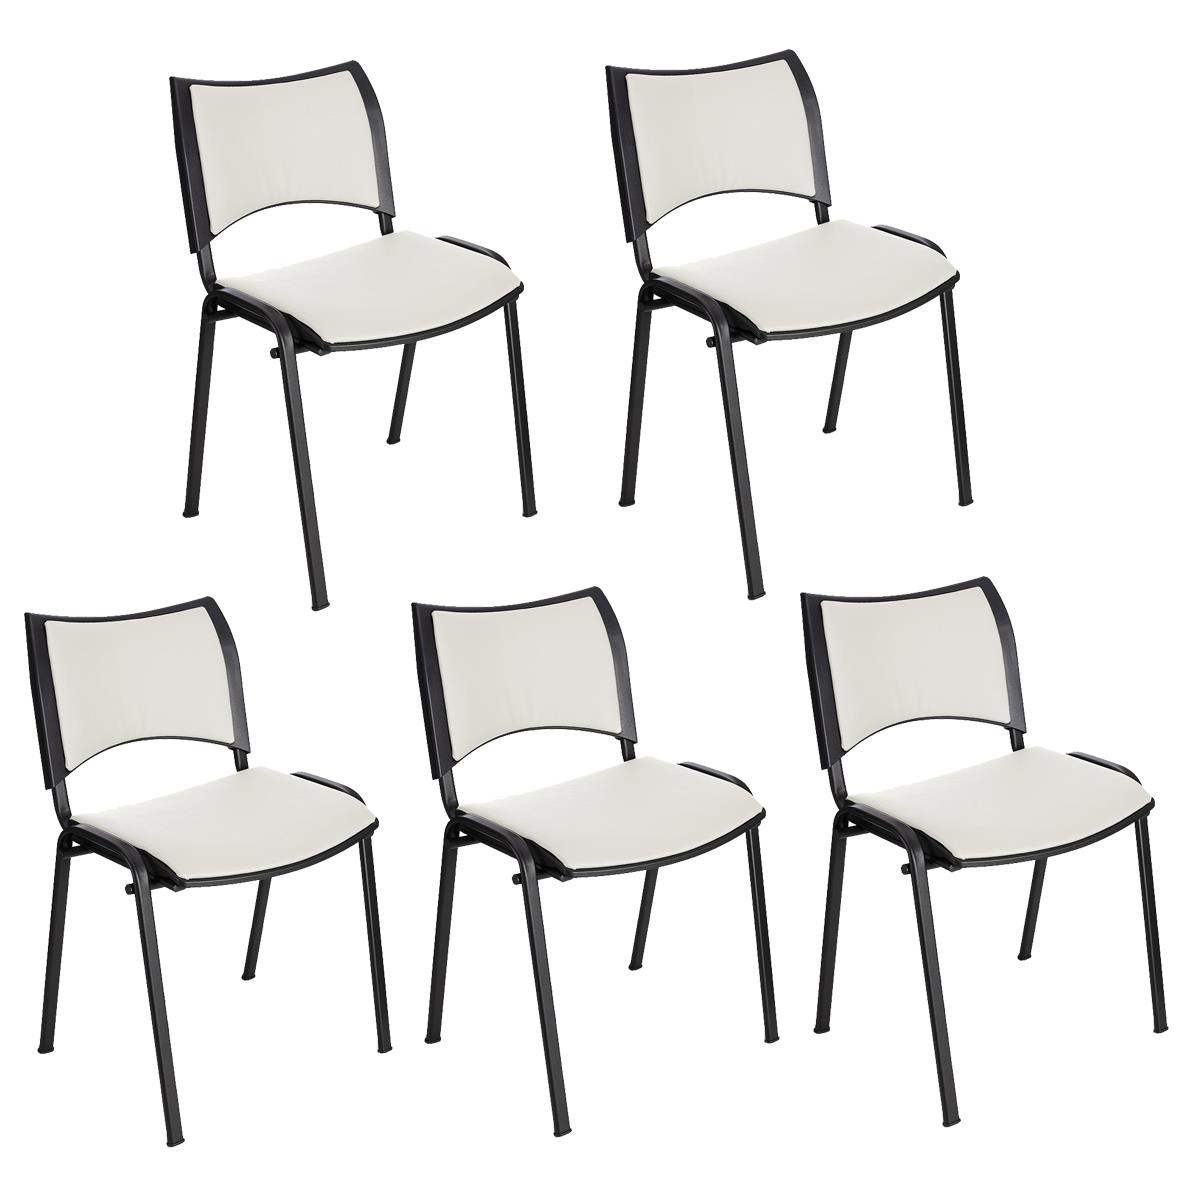 Lote 5 Cadeiras de Visita ROMEL PELE, Prática e Empilhável, Pernas Pretas, Branco